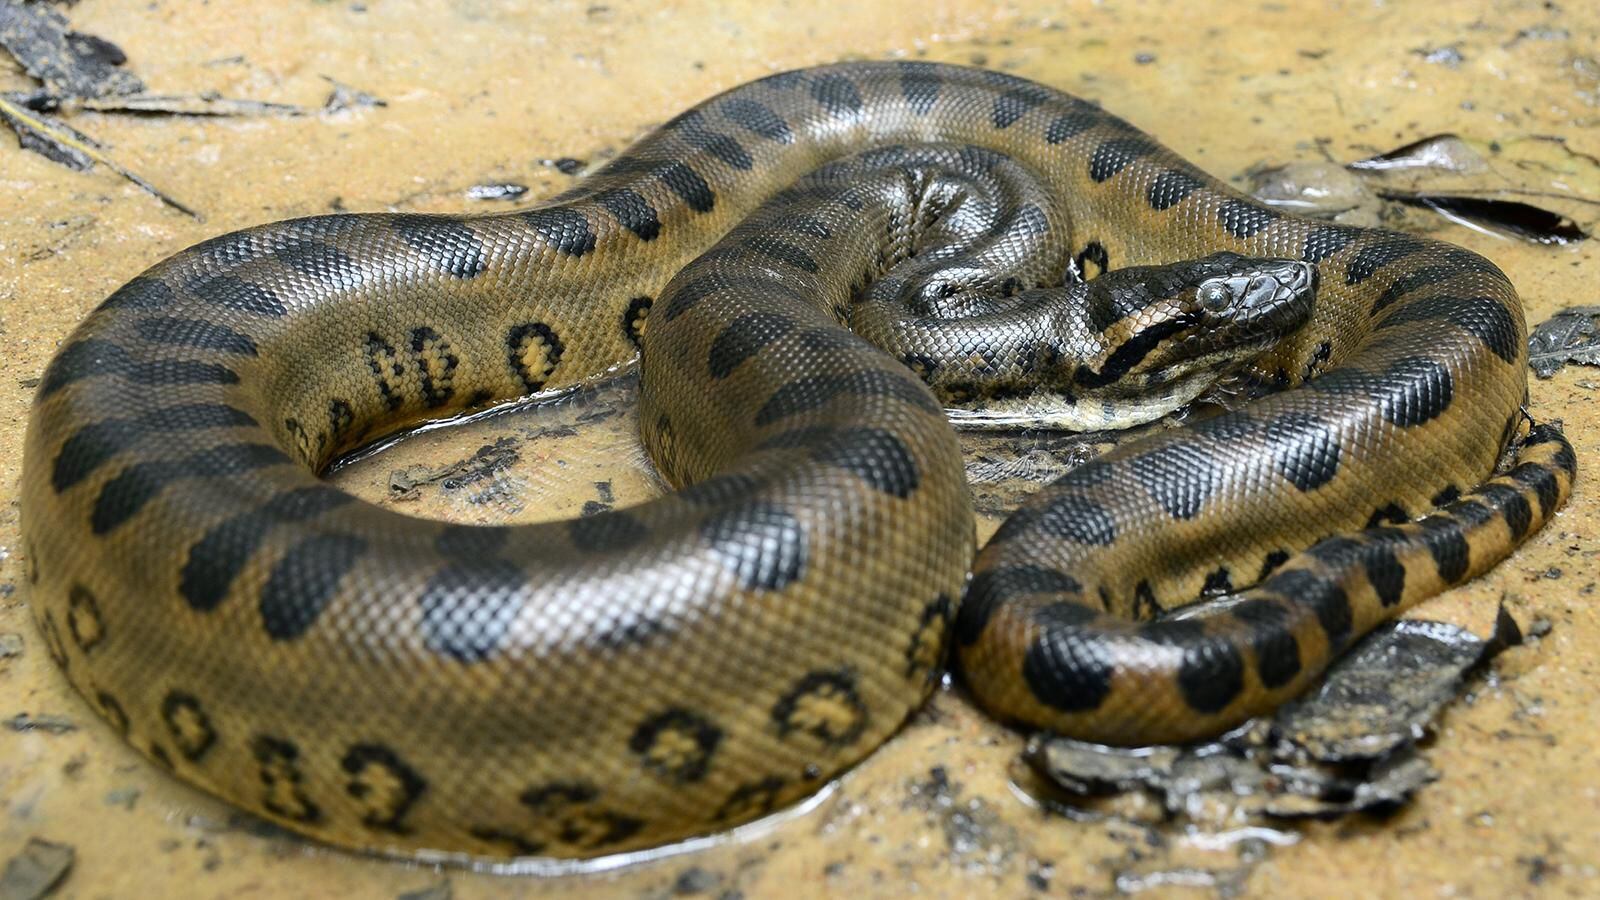 La anaconda tiene un color verde oscuro, con marcas ovales de color negro y dorado. Foto: La Reserba